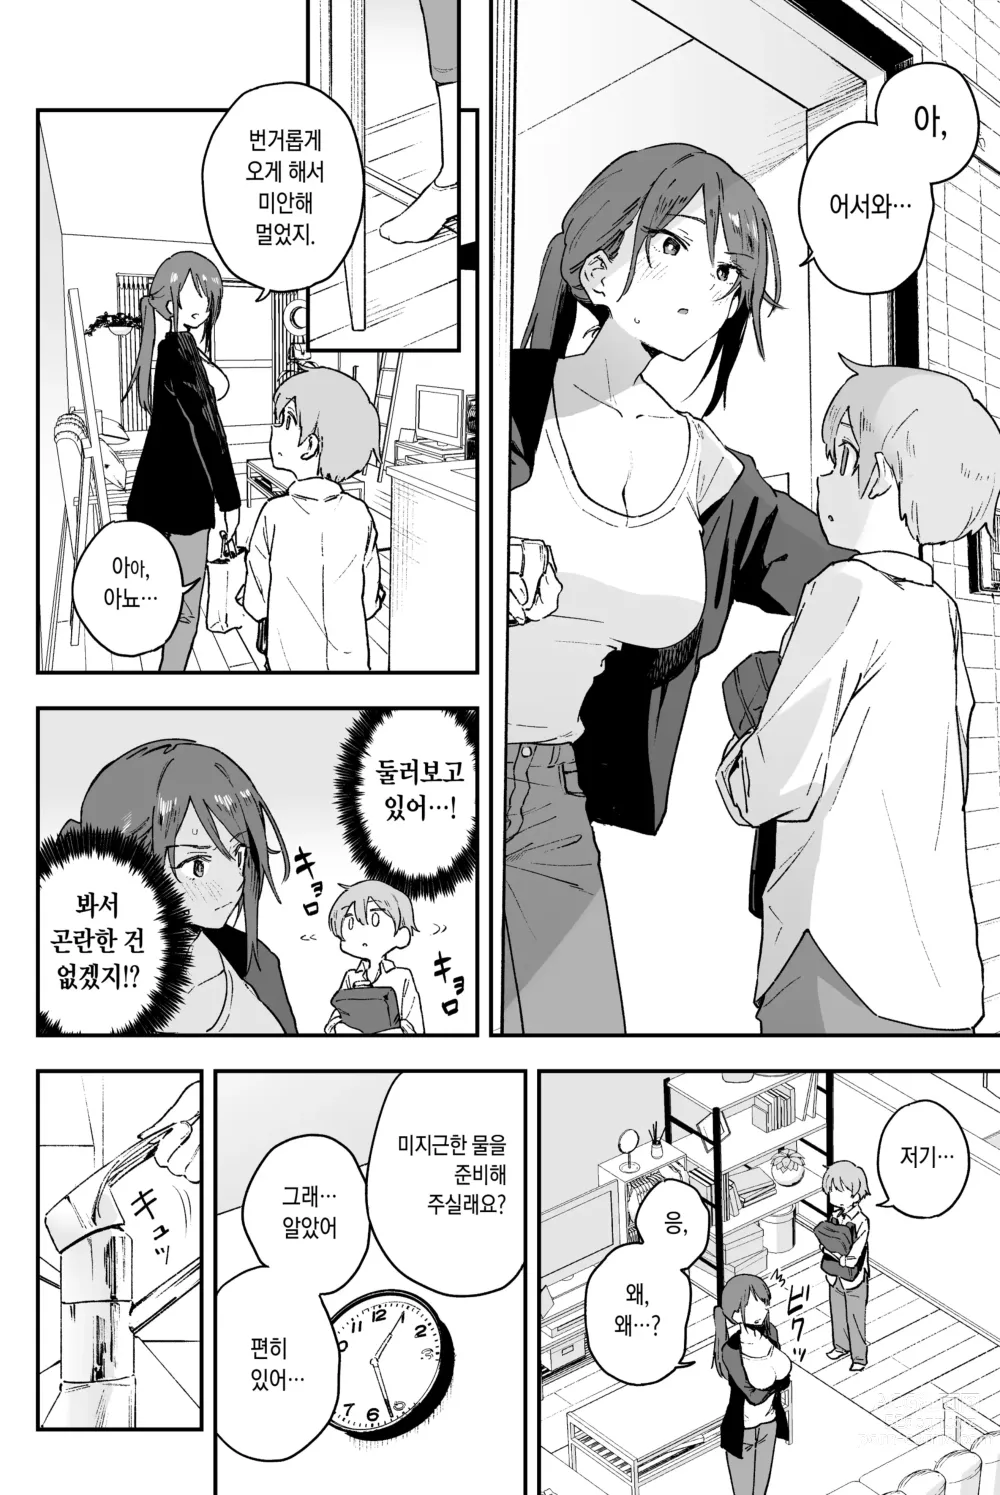 Page 6 of doujinshi 쿨한 누나에겐 누구에게도 말할 수 없는 고민이 있다.